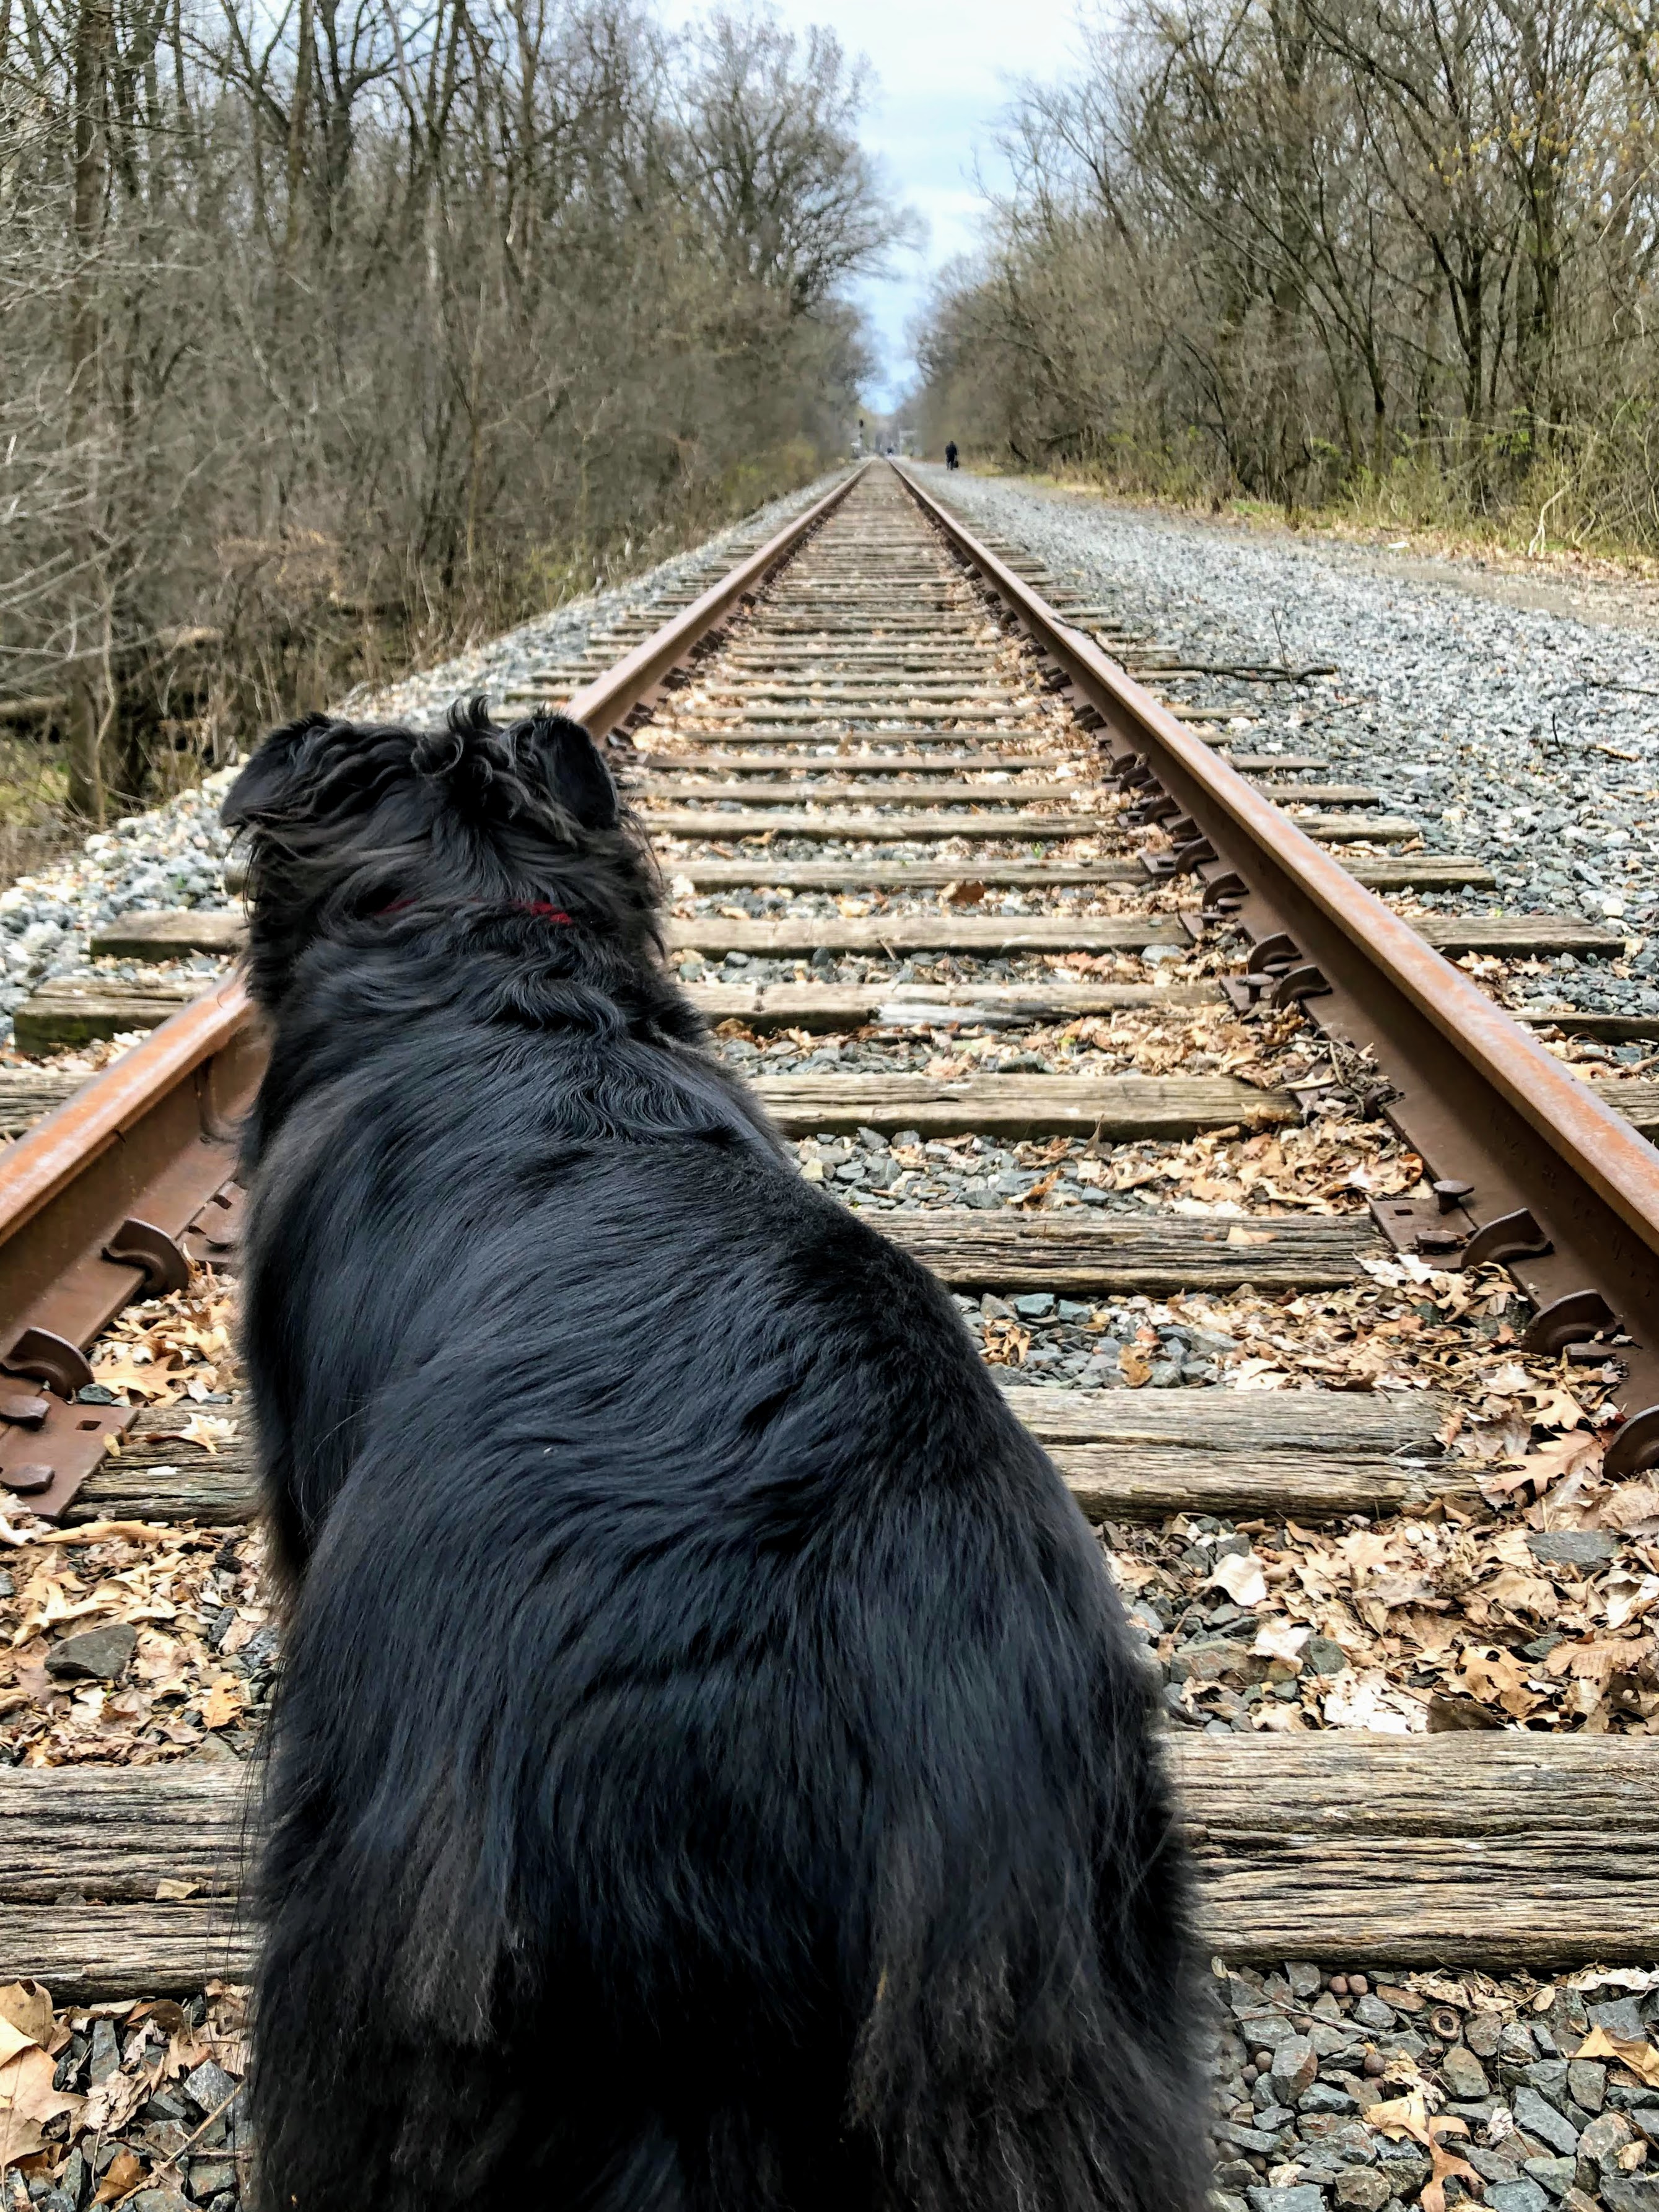 arlee on the tracks